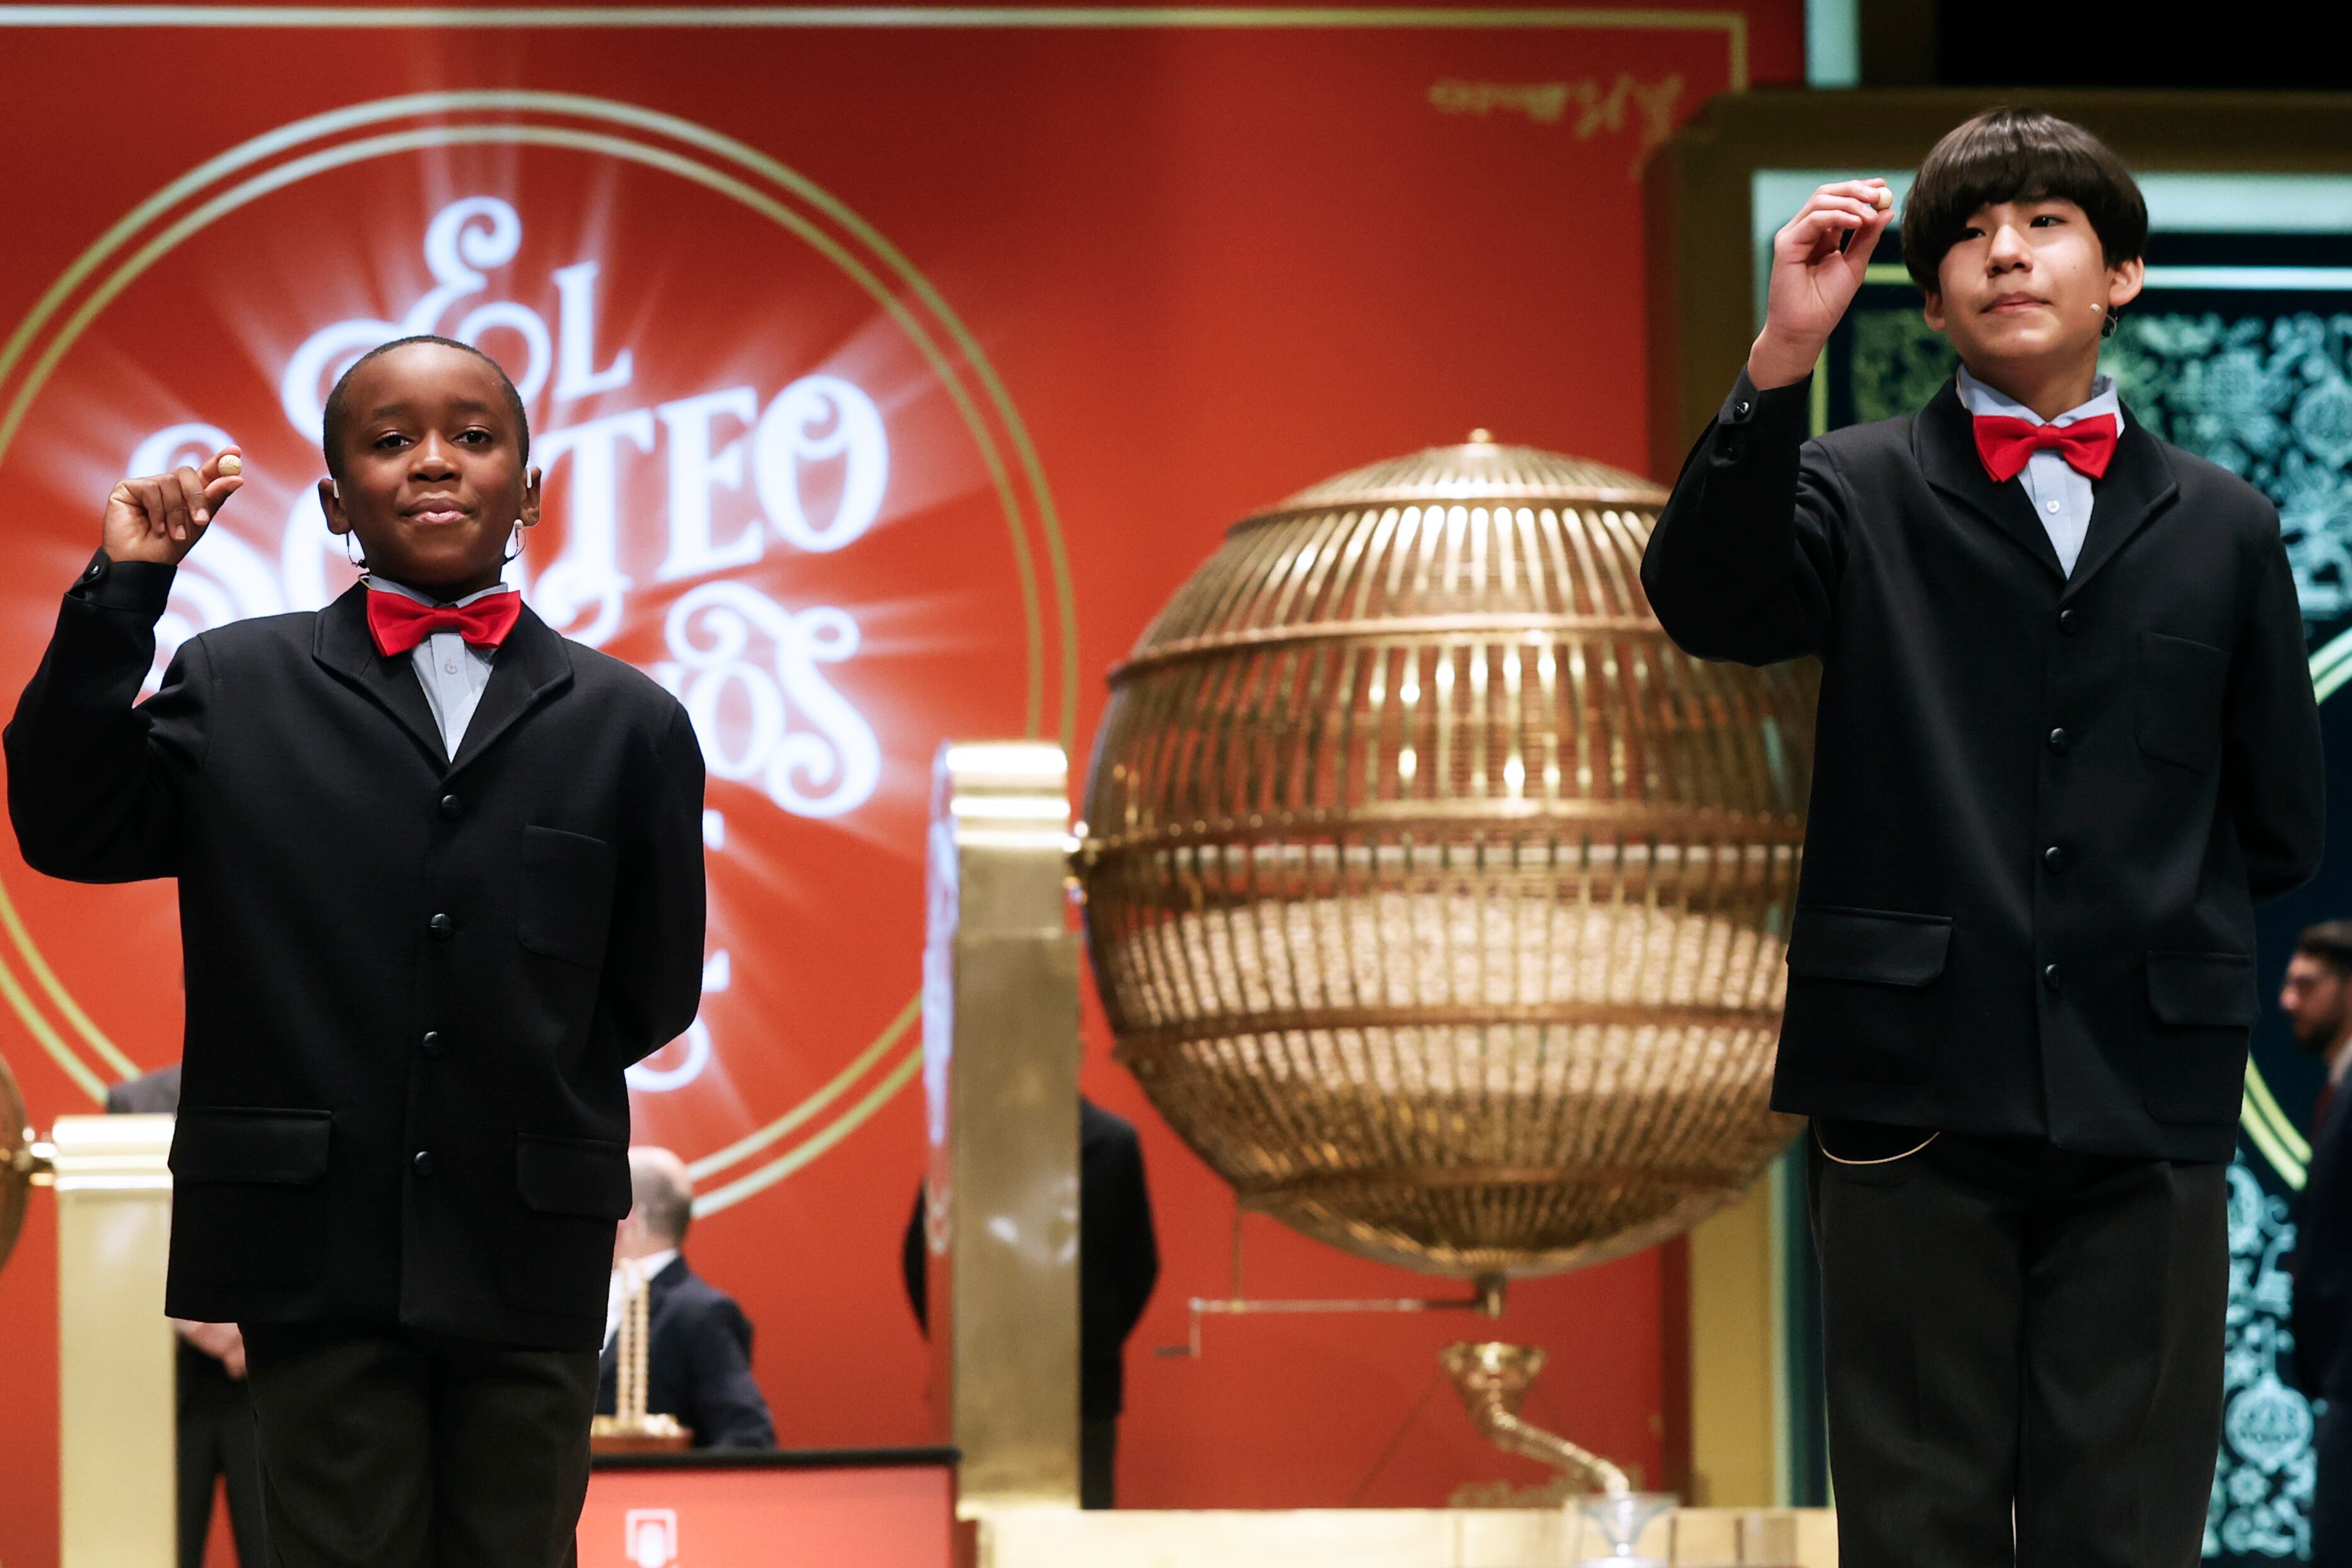 Desde la izquierda, Ángel Abaga Elebiyo y  Alonso Dávalos Durán cantan el premio Gordo de la Lotería de Navidad. El 05490 ha resultado premiado con el premio Gordo, que reparte 400.000 euros por décimo.